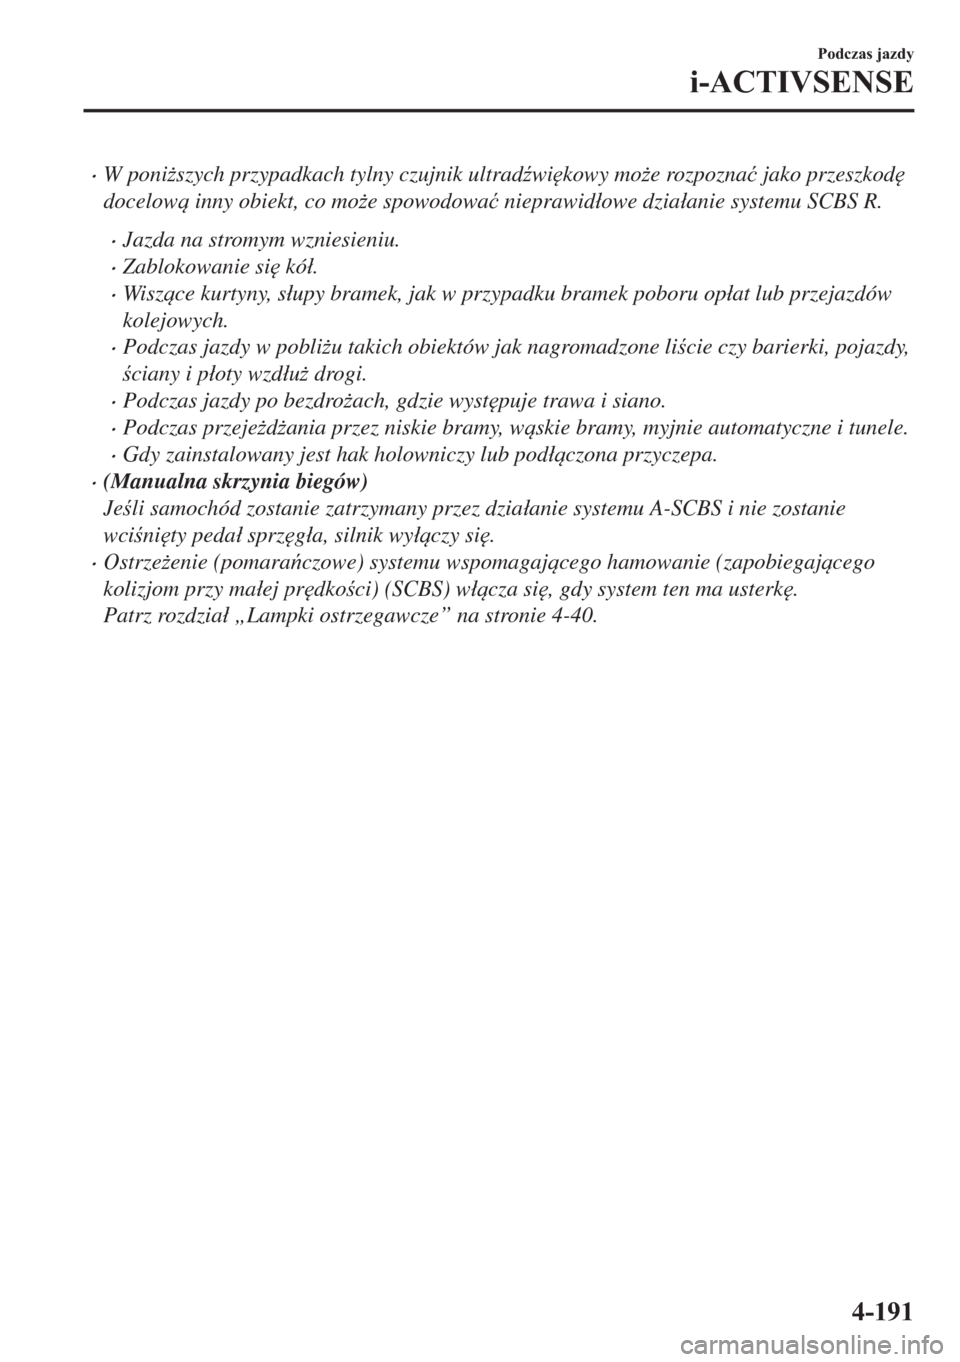 MAZDA MODEL 2 2019  Instrukcja Obsługi (in Polish) �xW poni*szych przypadkach tylny czujnik ultrad(wi
kowy mo*e rozpozna�ü jako przeszkod

docelow inny obiekt, co mo*e spowodowa�ü nieprawid�áowe dzia�áanie systemu SCBS R.
�xJazda na stromy